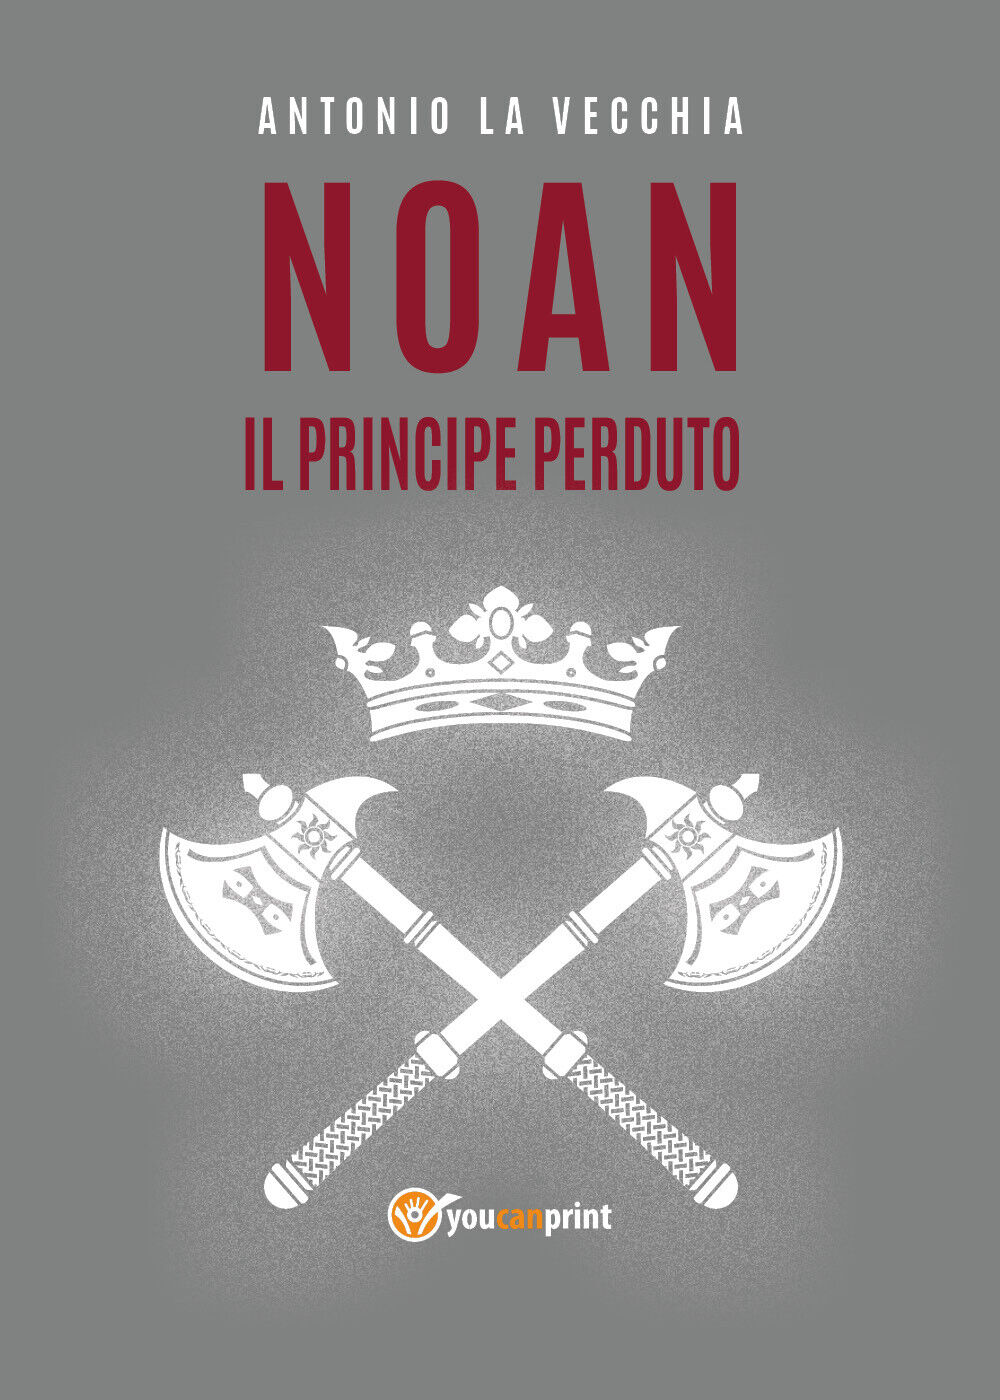  Noan, il principe perduto di Antonio La Vecchia,  2021,  Youcanprint